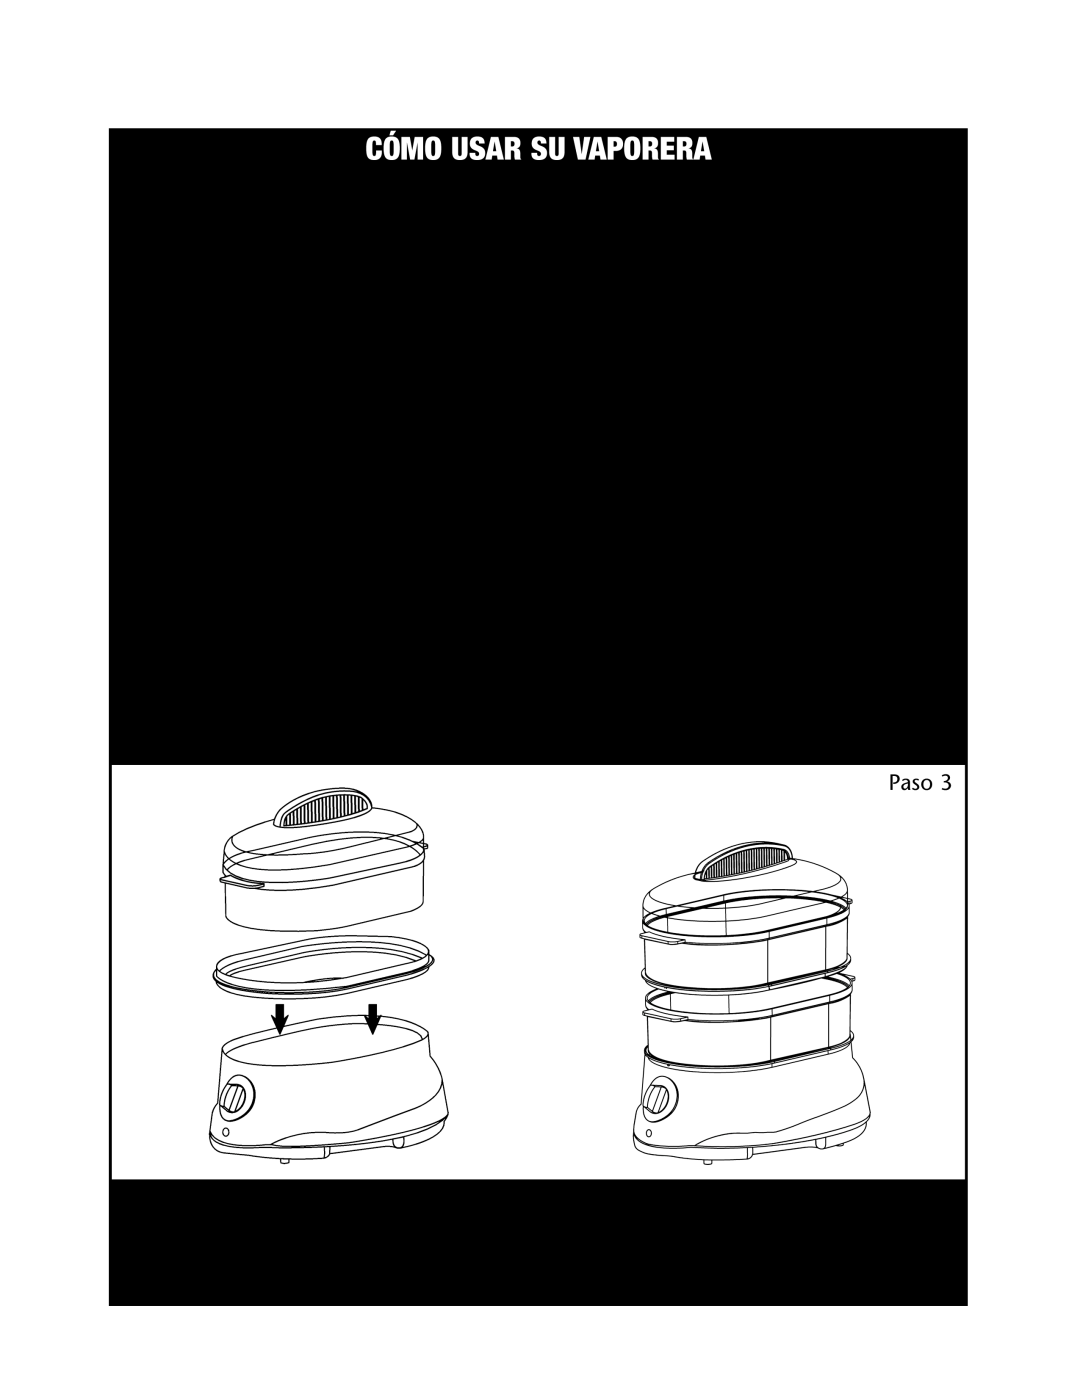 Rival CKRVSTLM20 manual Uso Del Tazón Superior O Inferior, Uso De Ambos Tazones, Cómo Usar Su Vaporera 